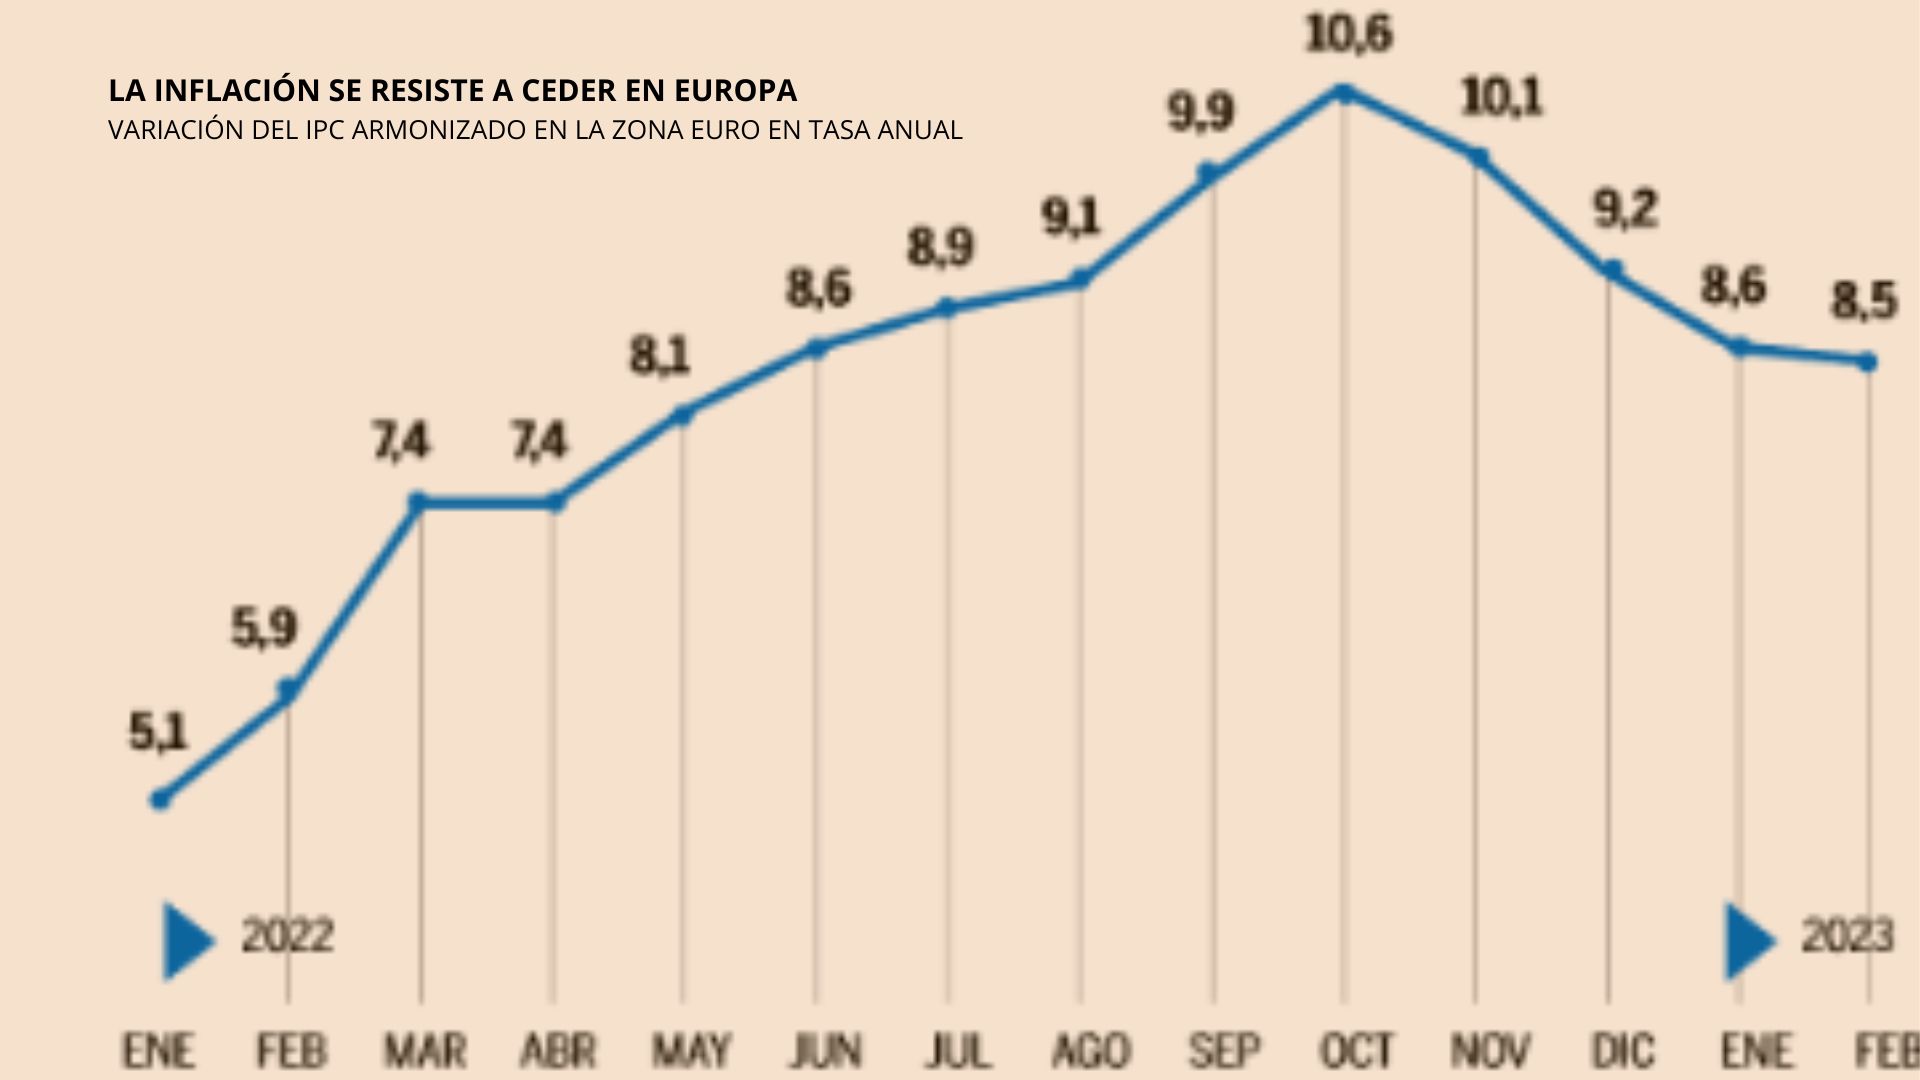 La inflación repunta en los grandes países del euro y vuelve a sembrar dudas sobre el crecimiento